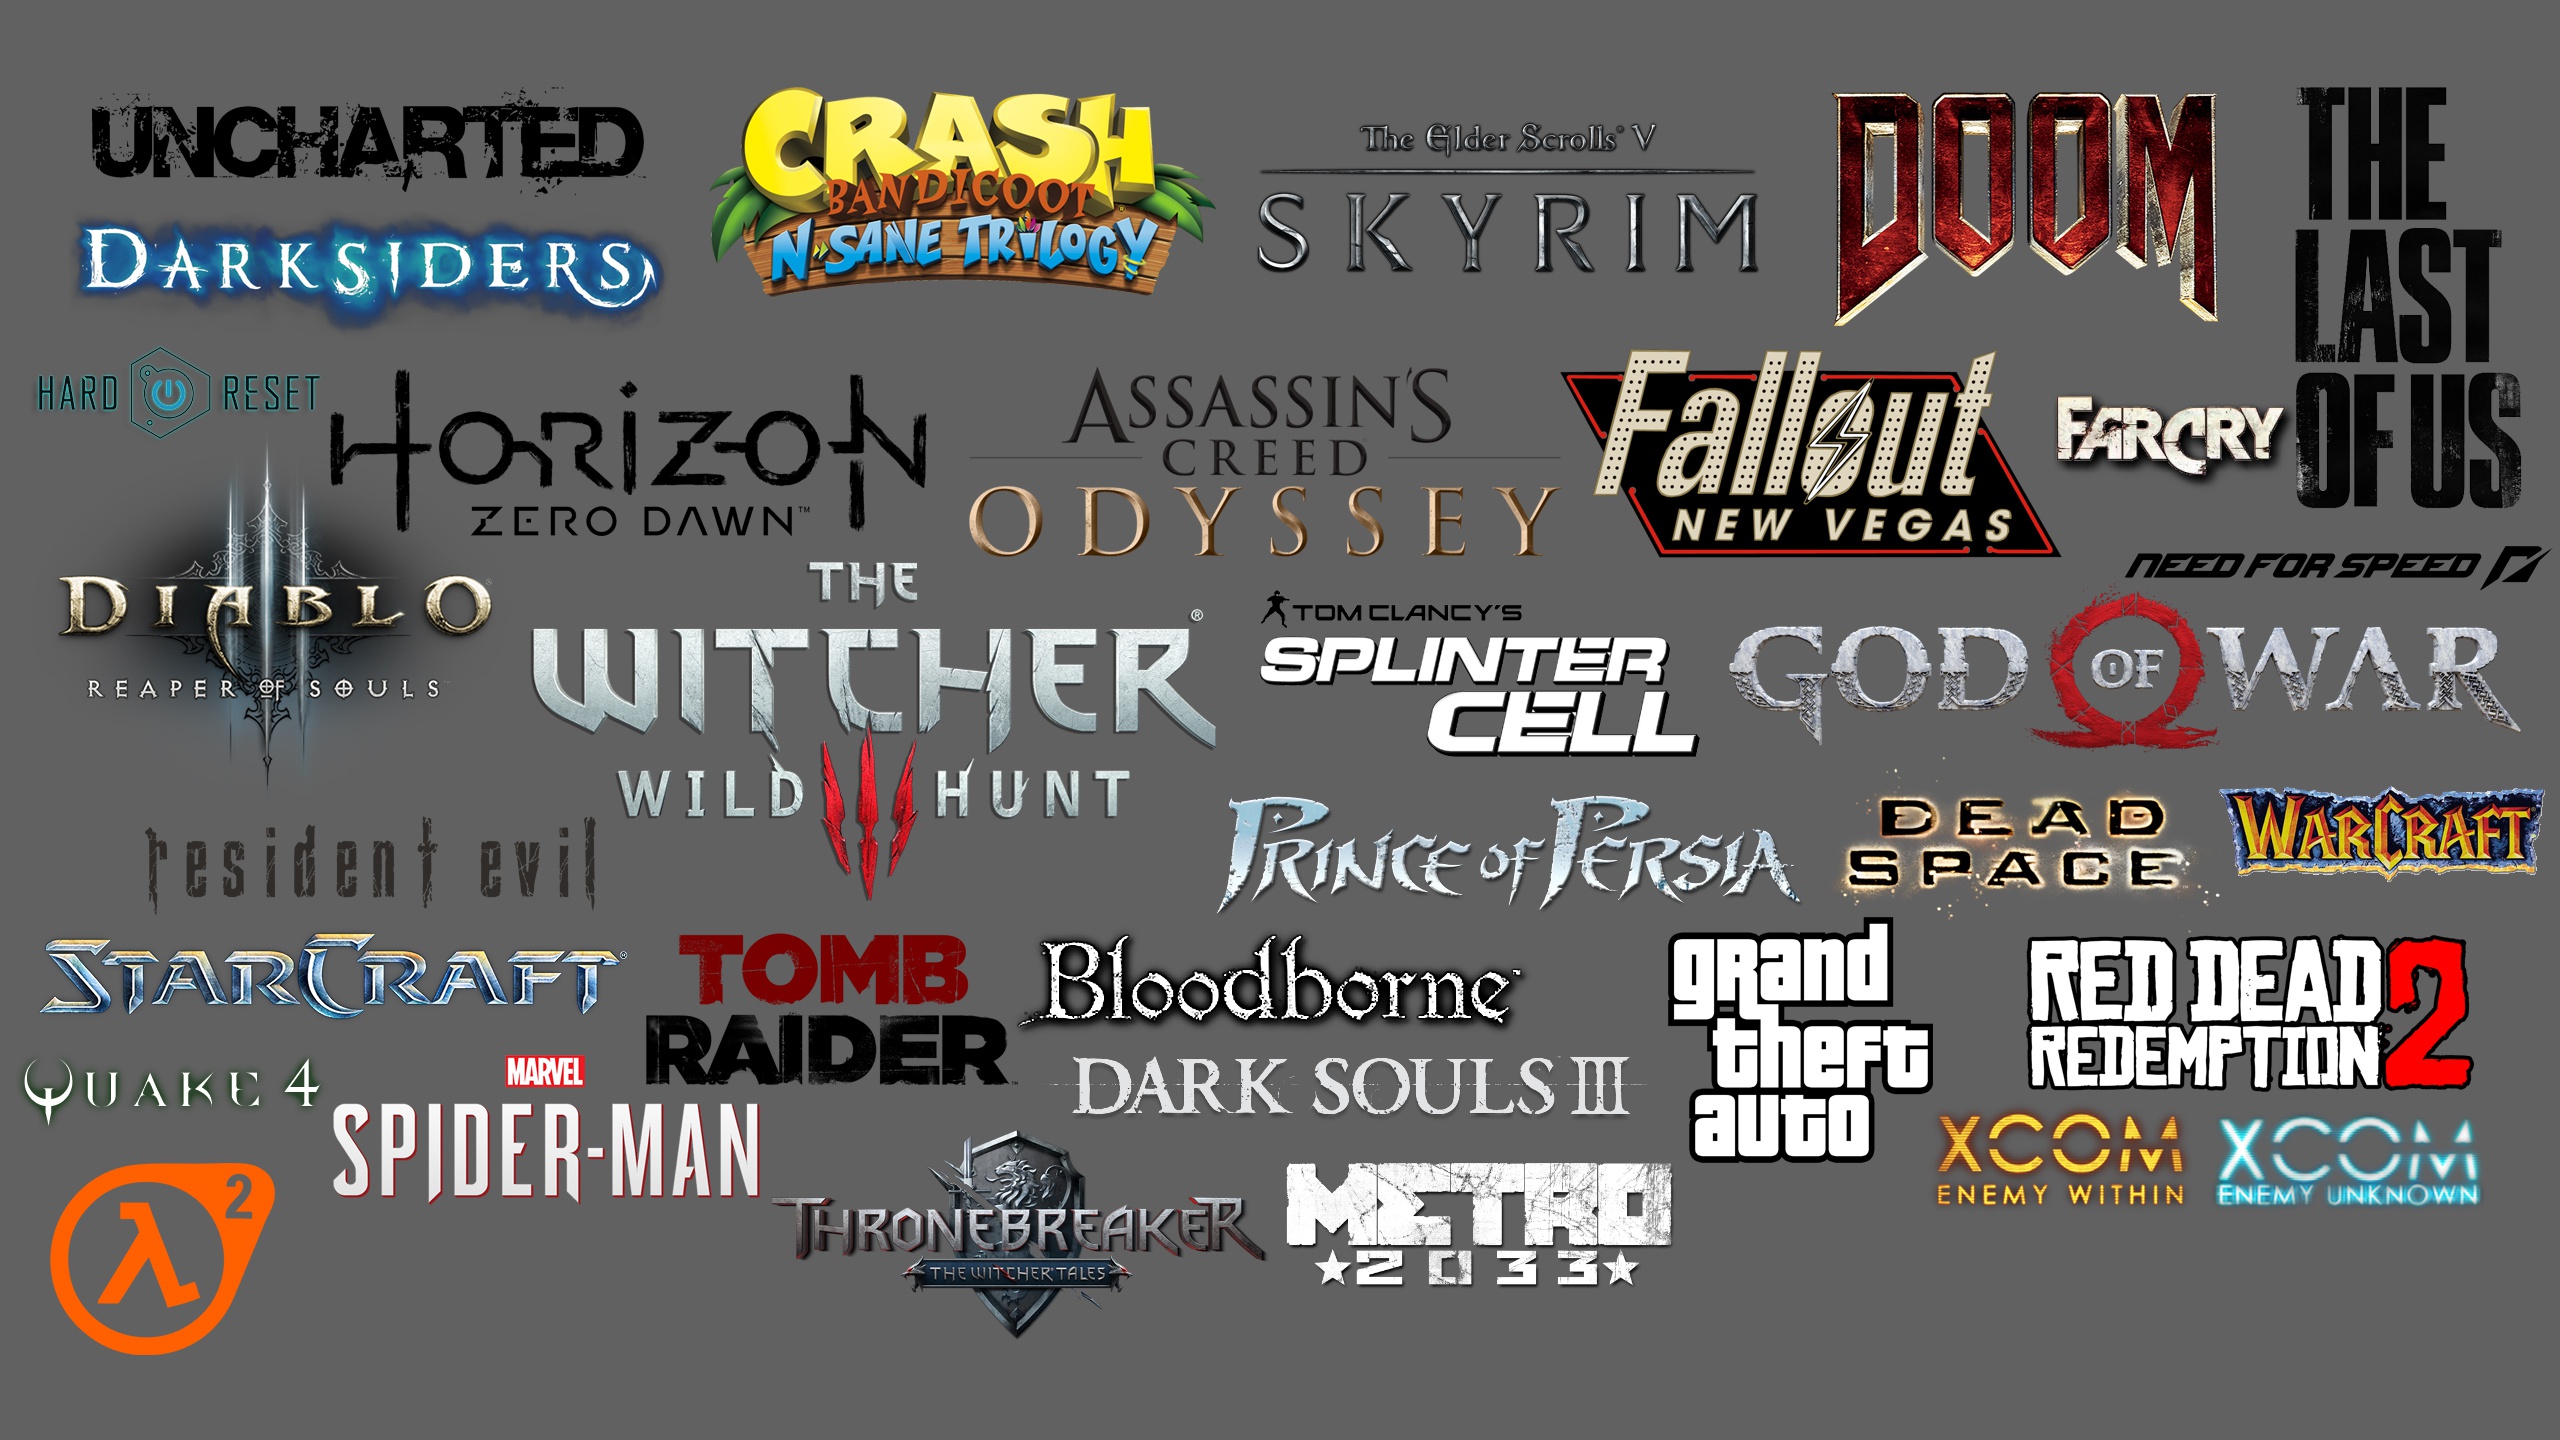 All gaming com. Логотипы компьютерных игр. Логотипы игр с названиями. Красивое название игры. Эмблемы популярных компьютерных игр.